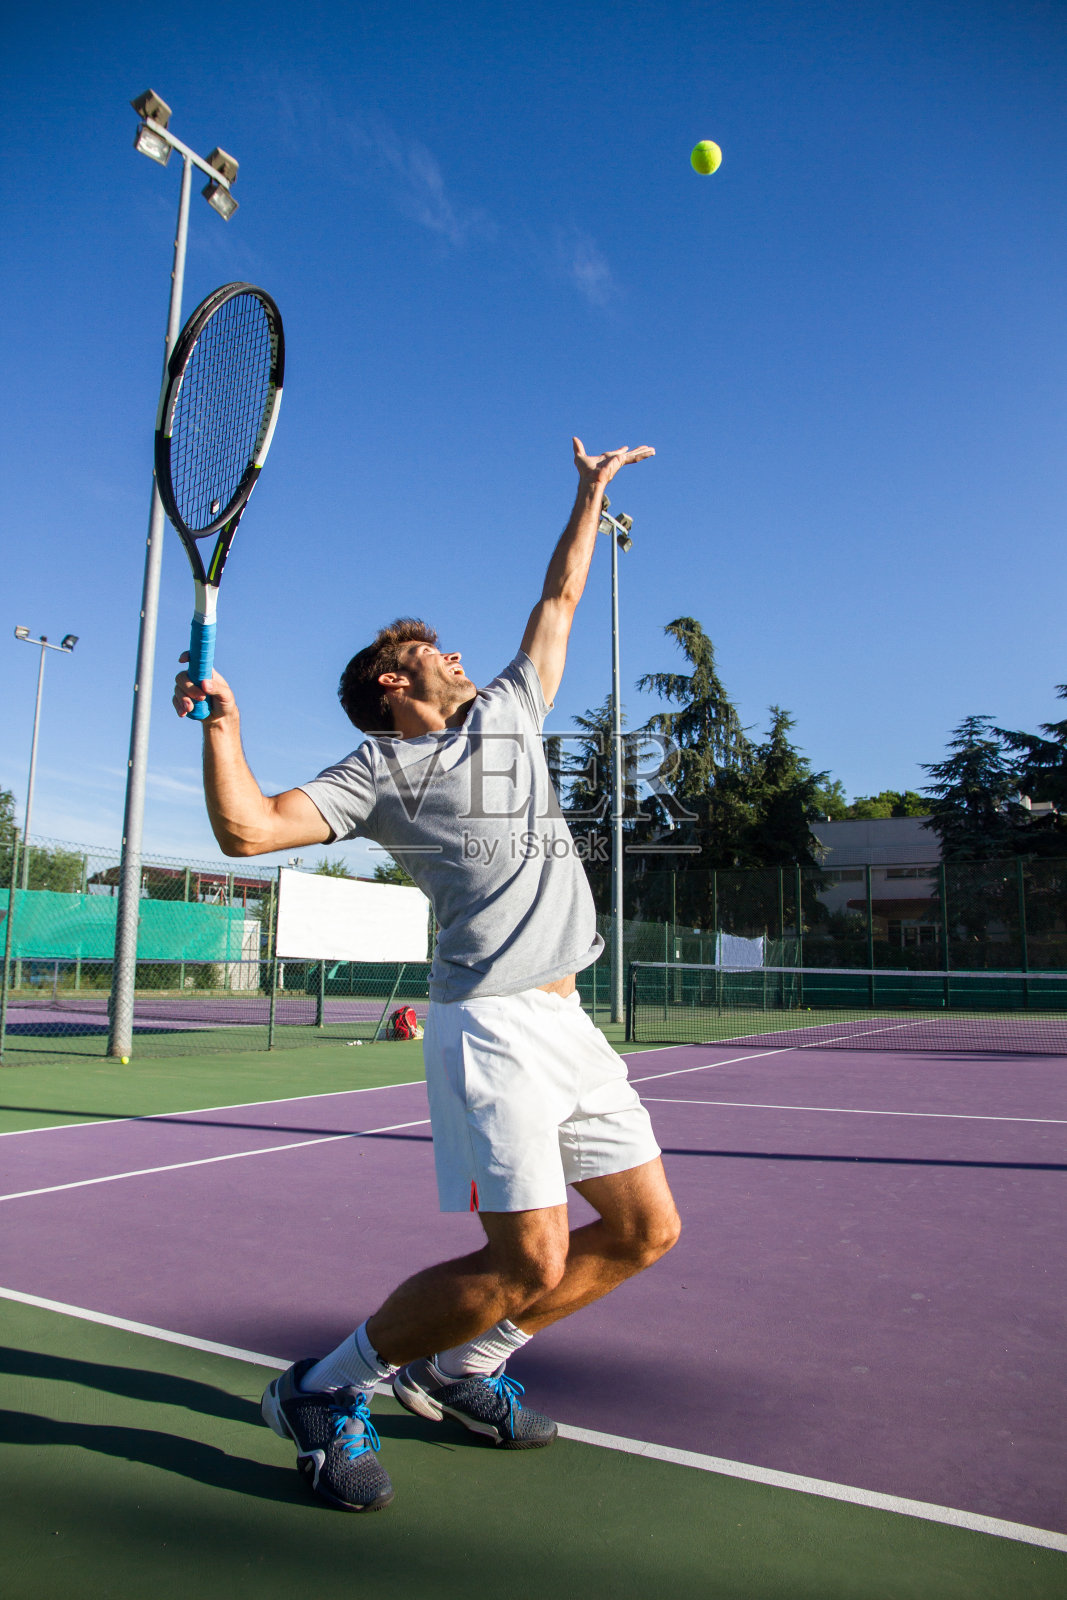 职业网球运动员正在踢网球。照片摄影图片